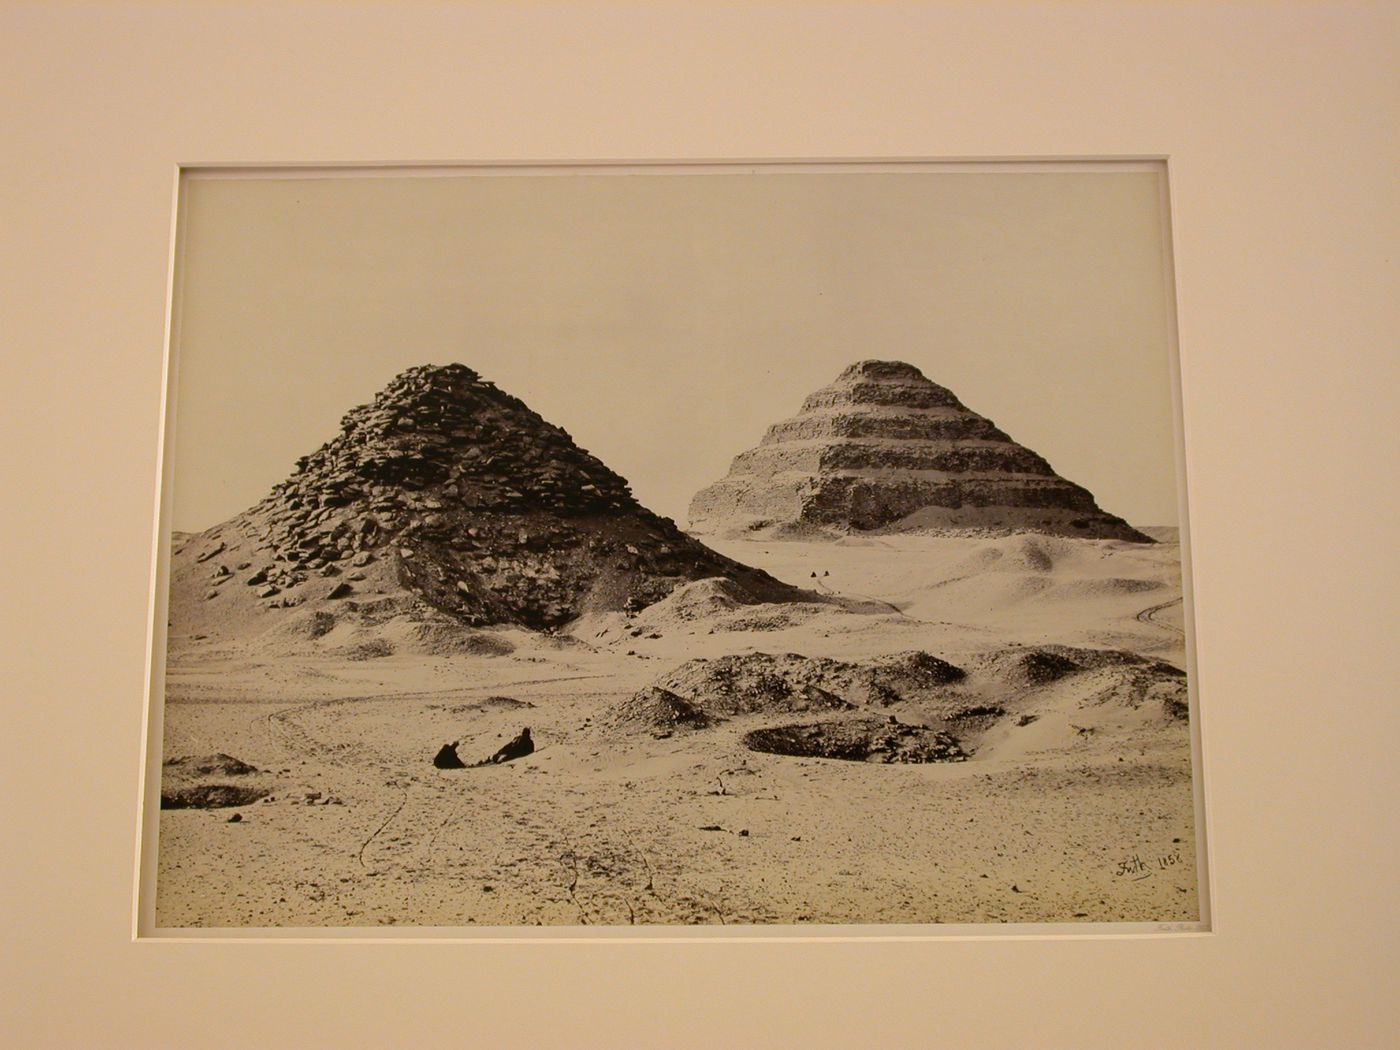 The Pyramids of Sakkarah